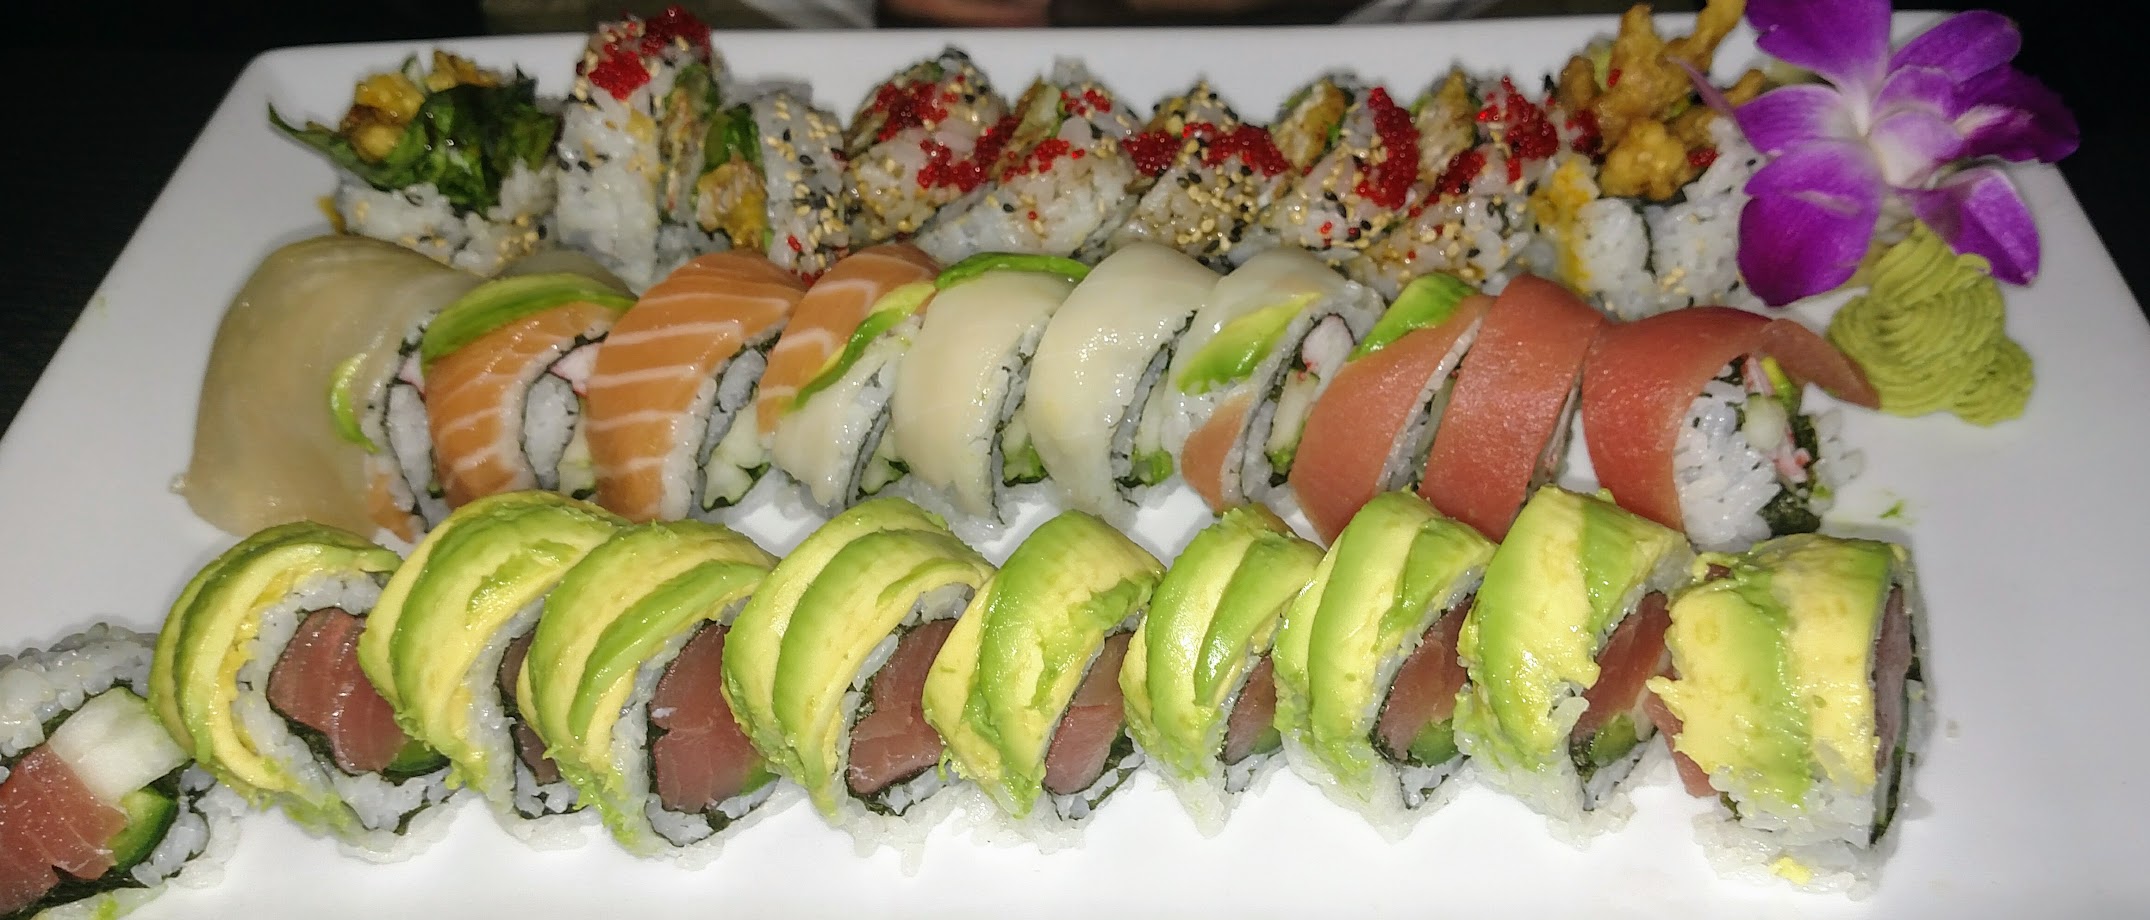 Kabuki Sushi Thai - We Deliver. Order Direct.